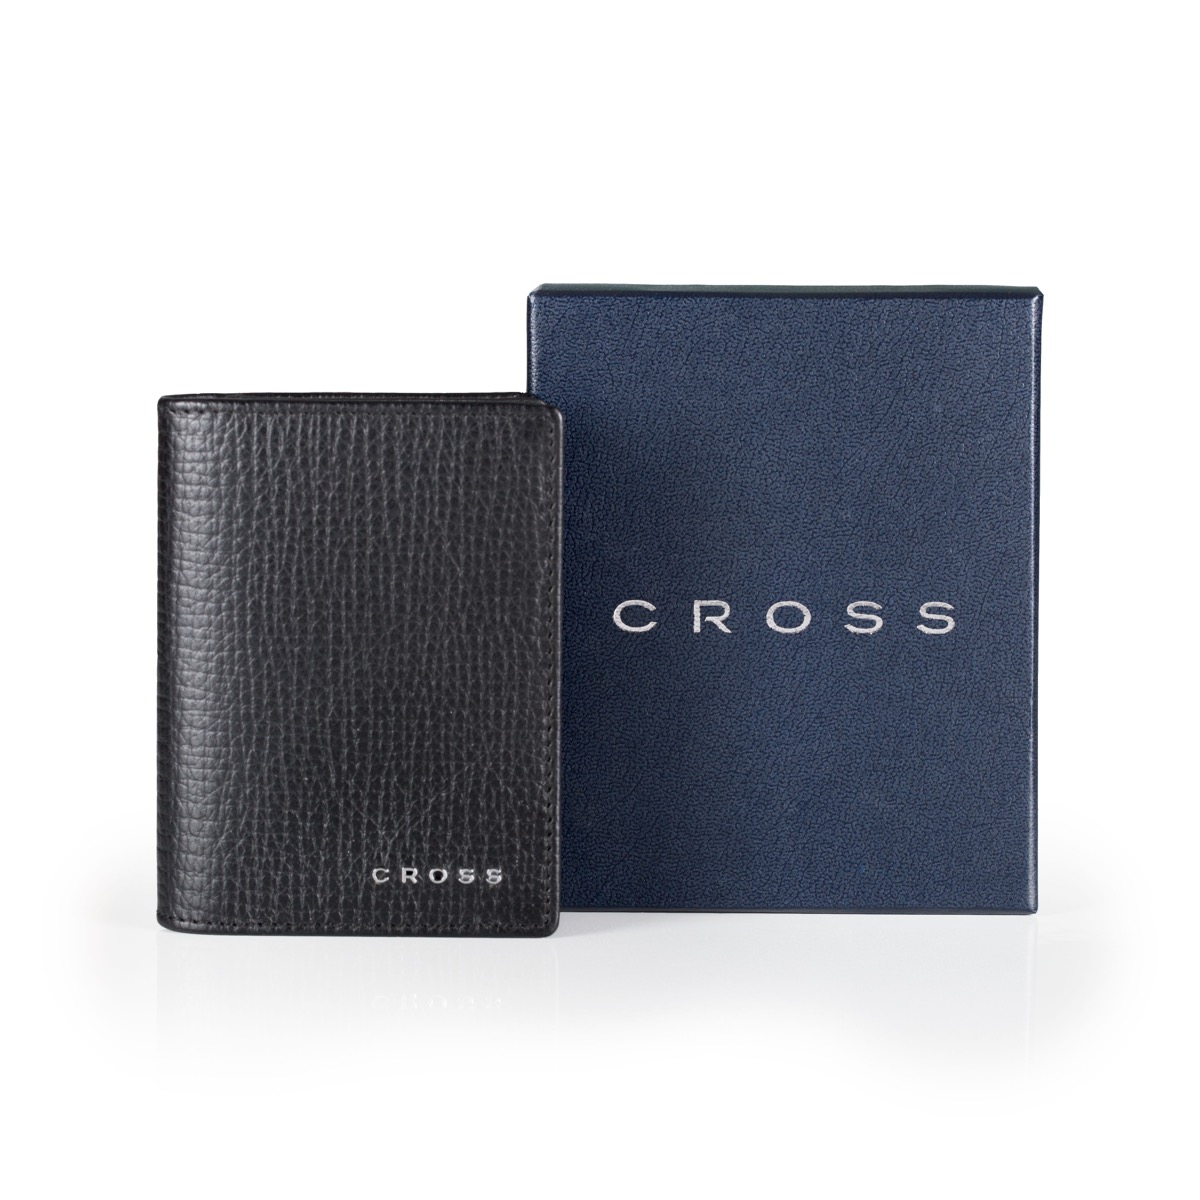 【4/13~4/19精選品牌8折優惠】美國 CROSS Richard T Cross系列 信用卡夾 AC238387